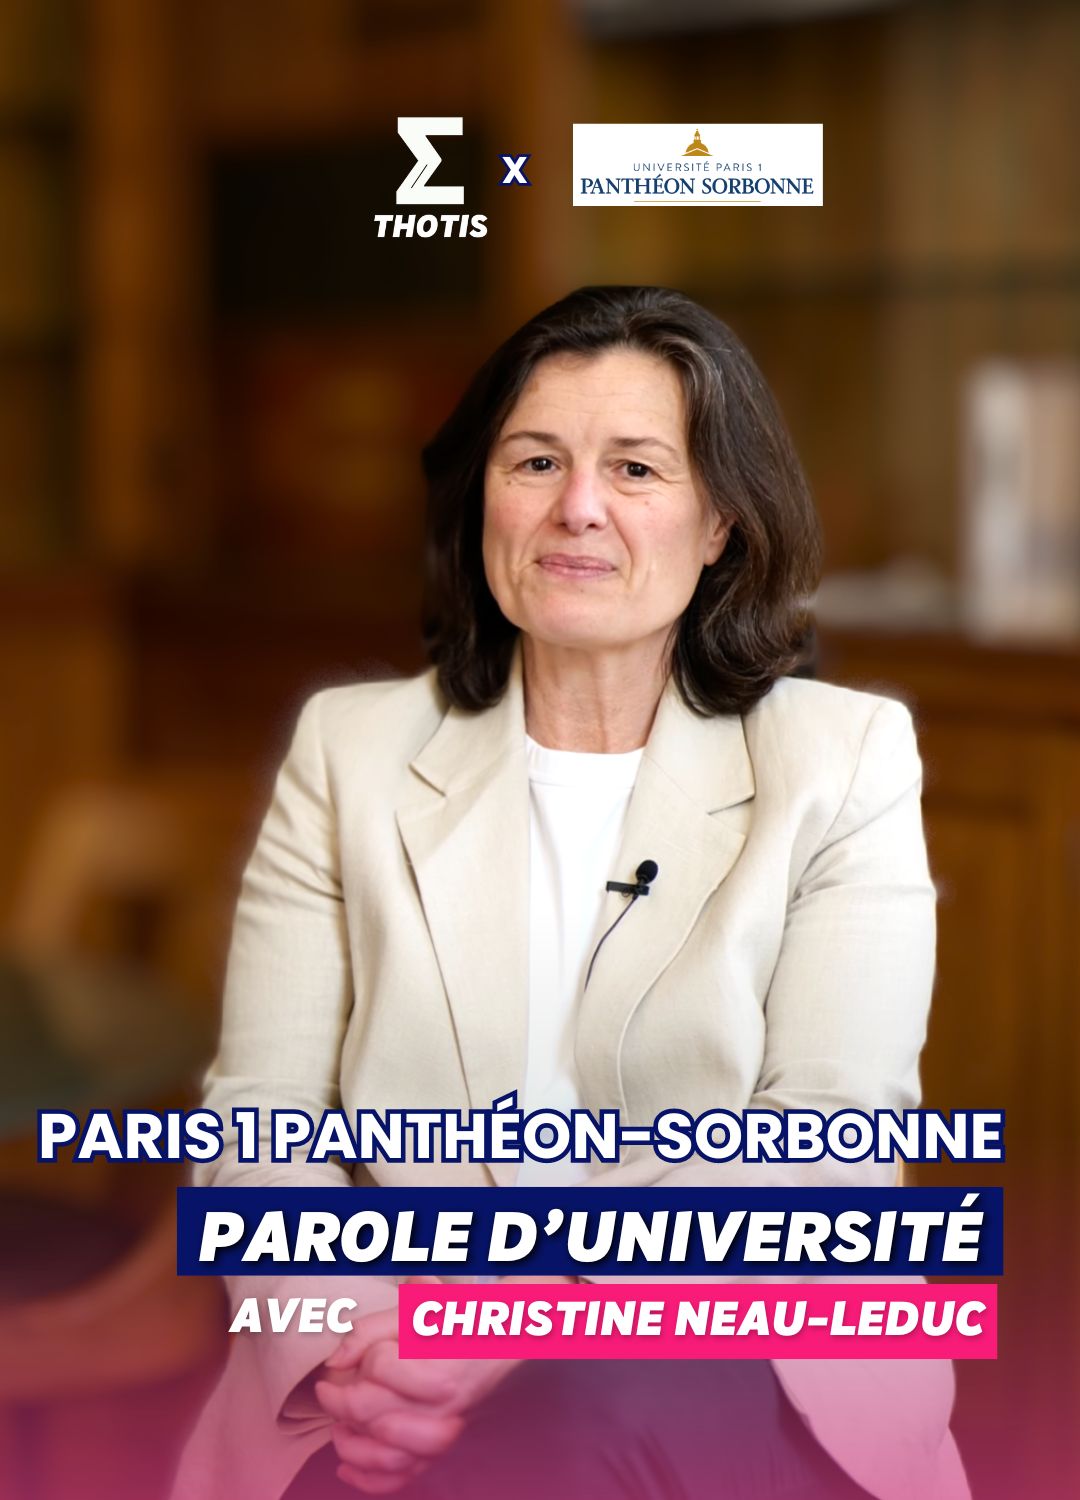 Parole d'université Sorbonne Paris 1 avec Christine Neau-Leduc